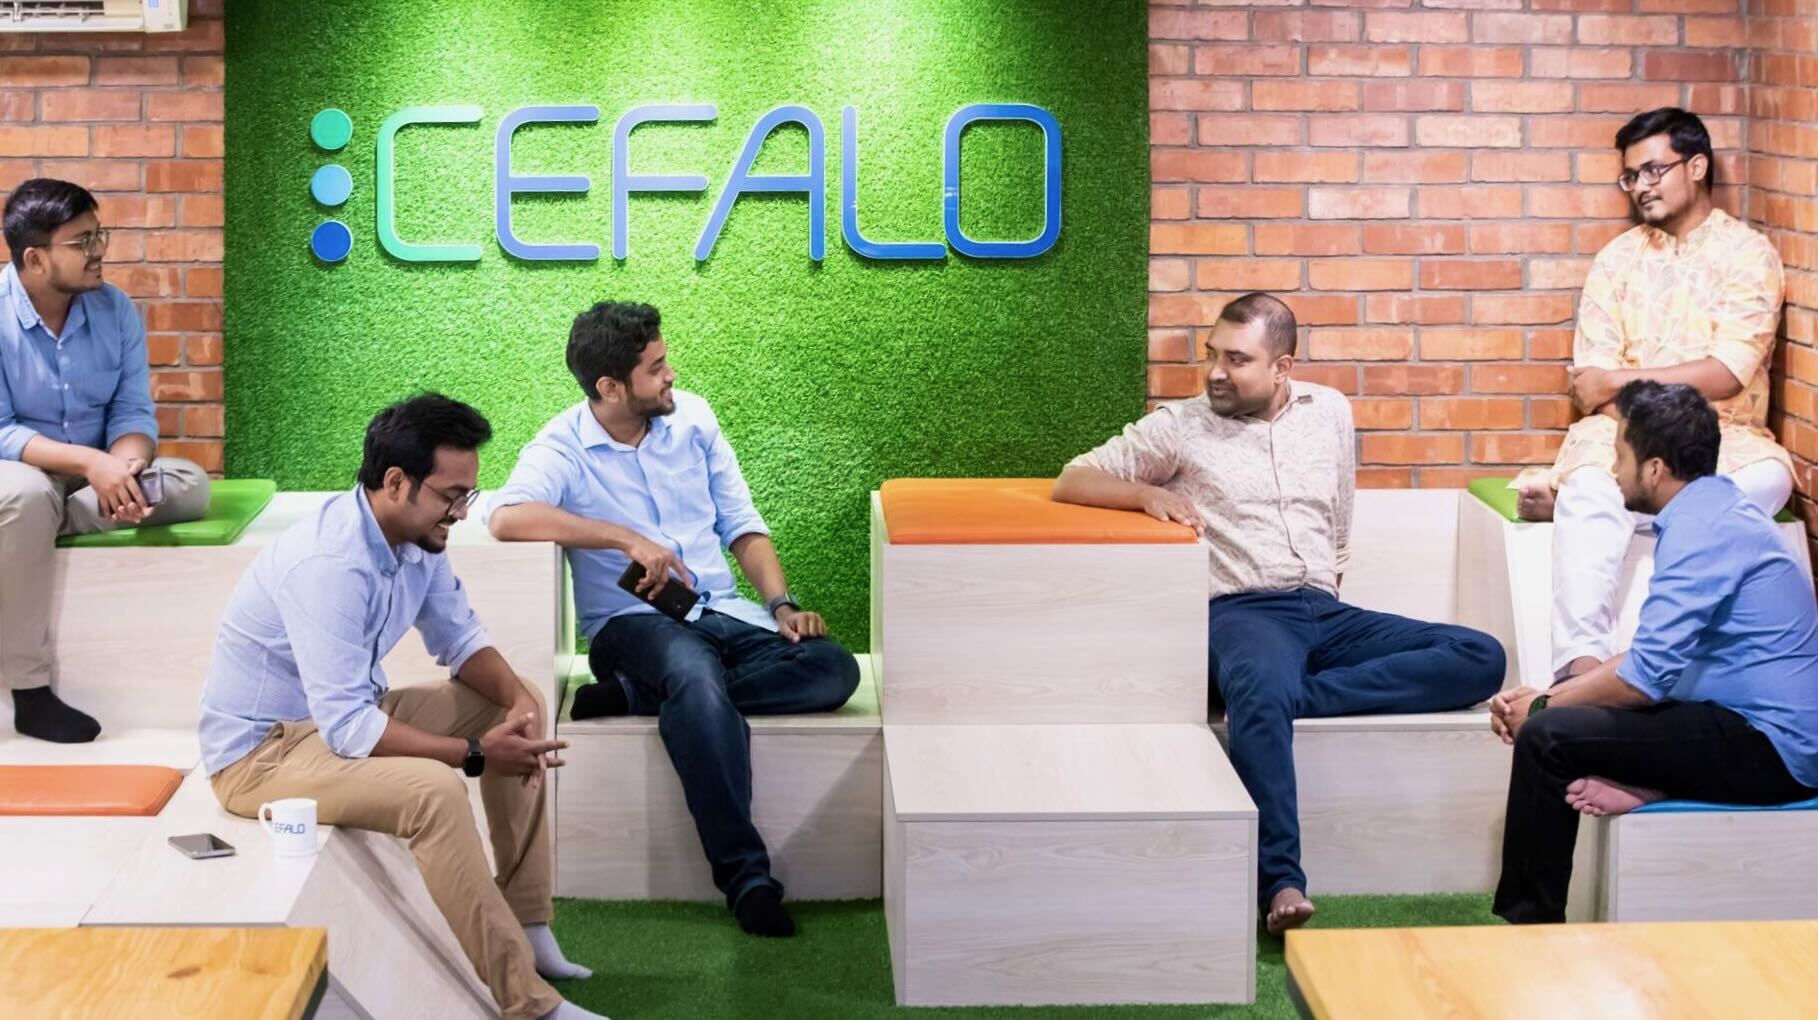 Cefalo-utviklere i kontorlokaler i Dhaka